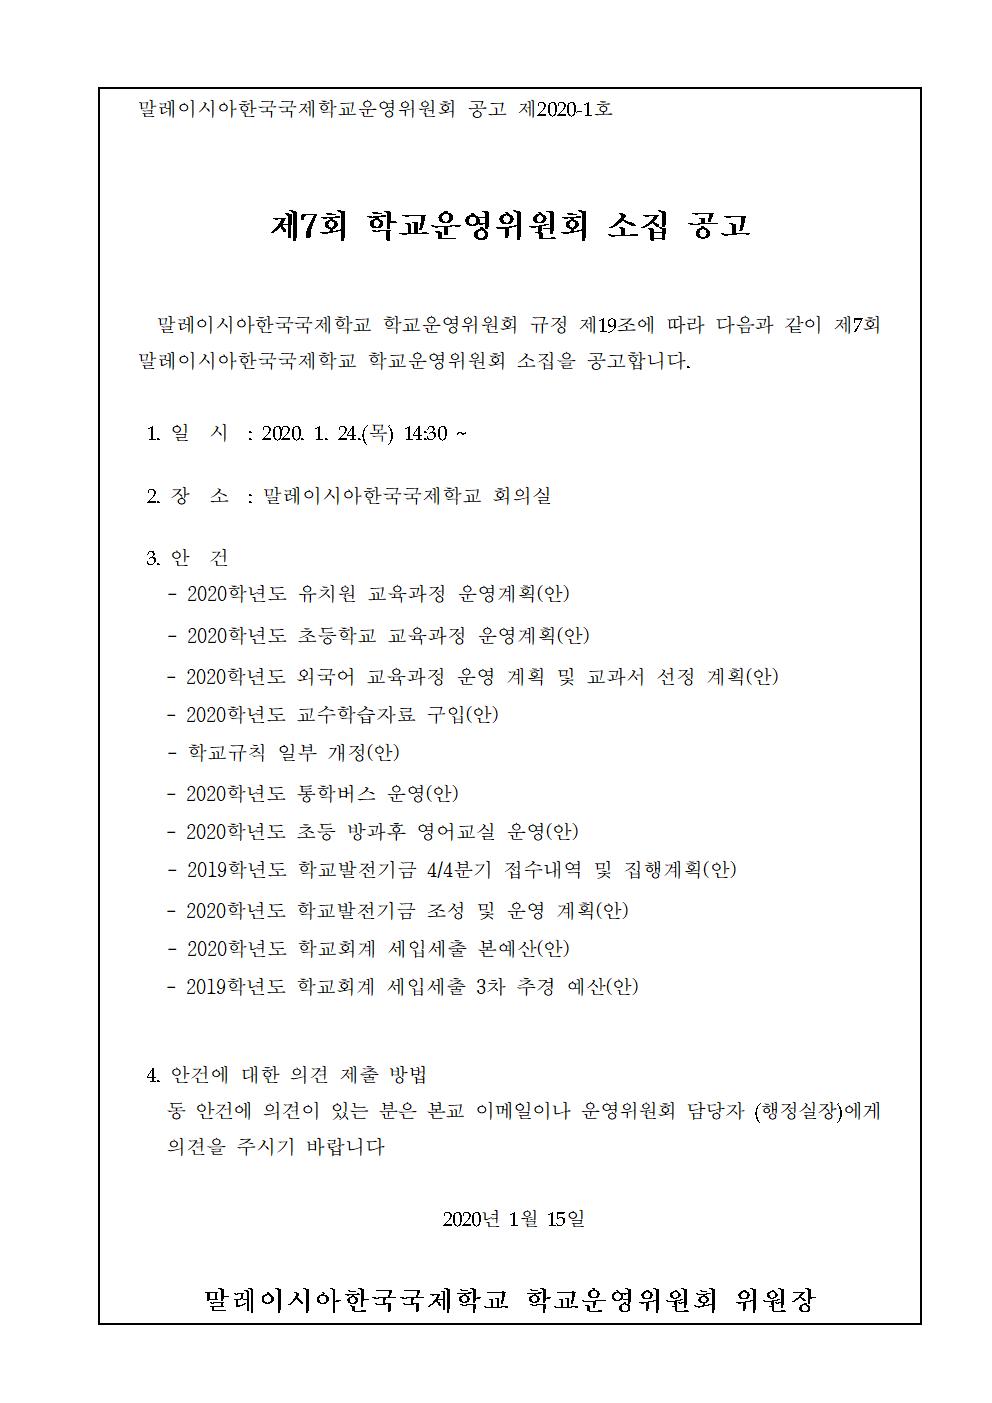 2019-7운영위원회 임시회 개최 알림(시행문)002.jpg